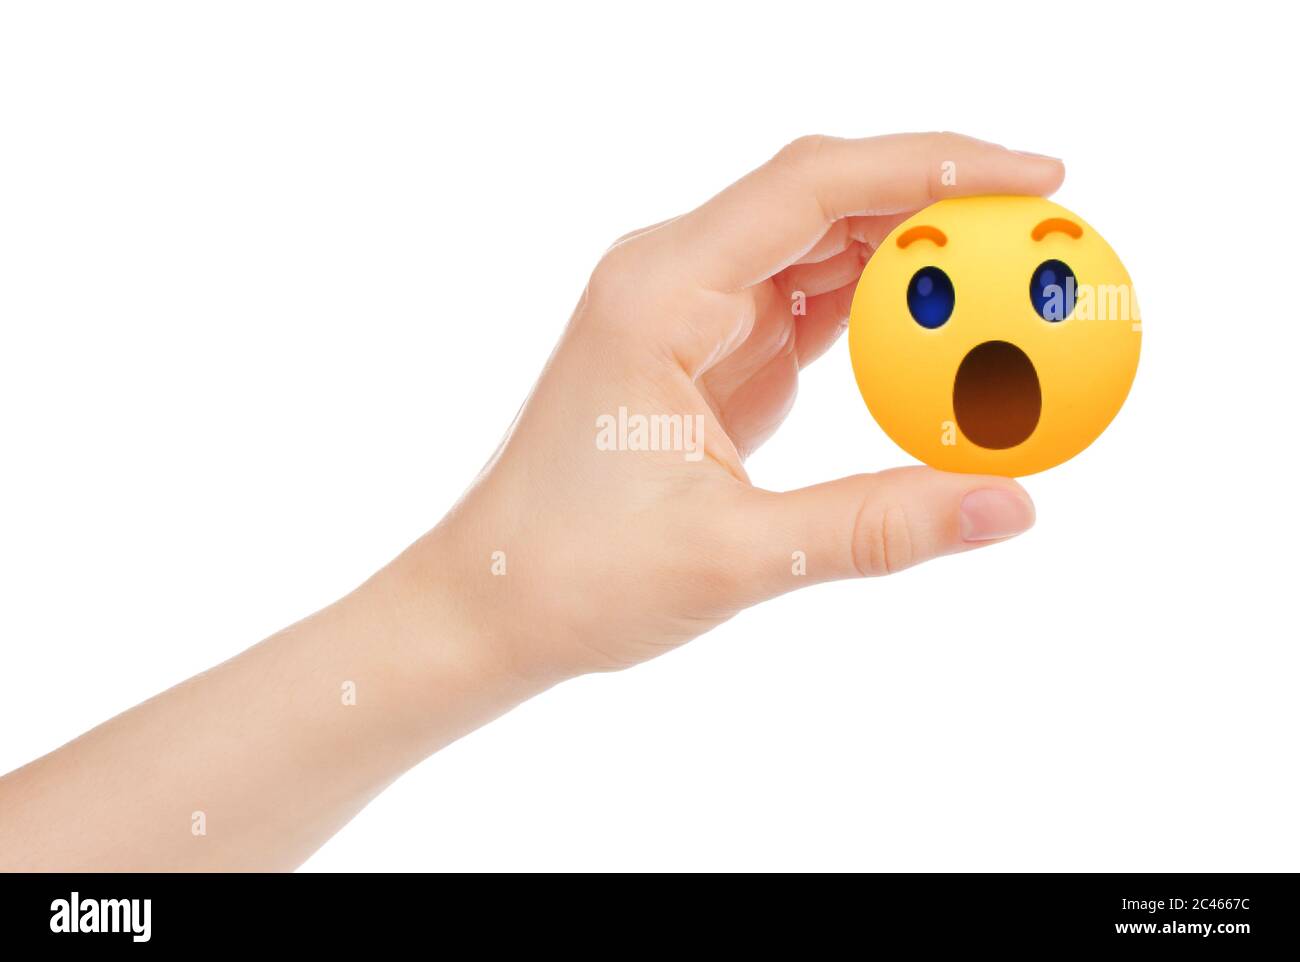 Kiew, Ukraine - 15. Mai 2019: Hand hält neue Facebook Wow empathische Emoji-Reaktion, gedruckt auf Papier. Facebook ist ein bekannter Social Networking Service Stockfoto